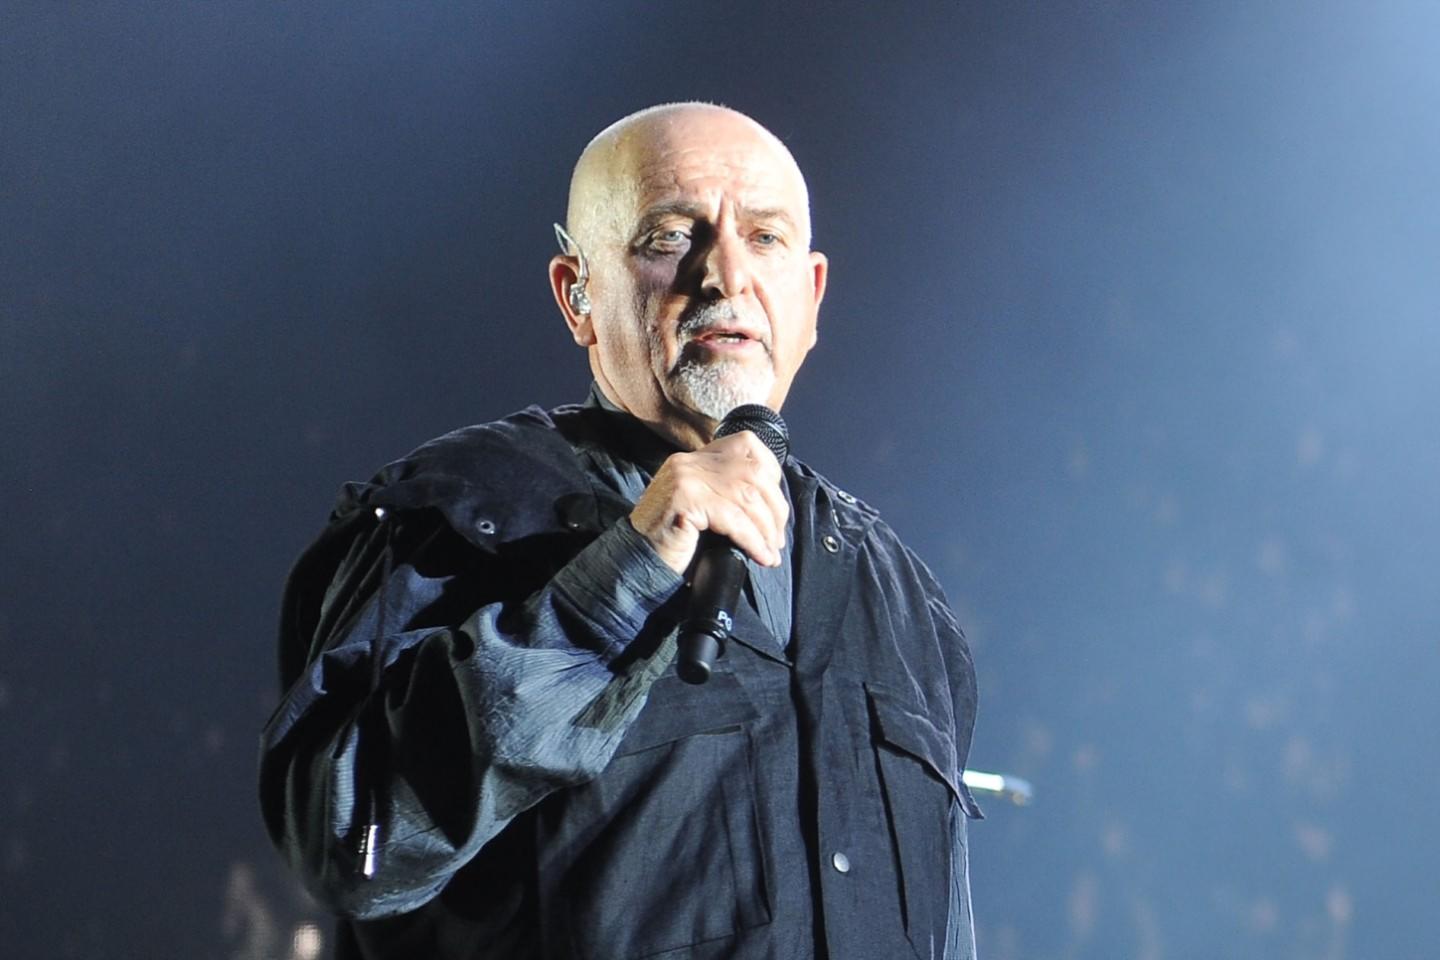 Peter Gabriel Tickets | Peter Gabriel Tour Dates 2021 and Concert ...